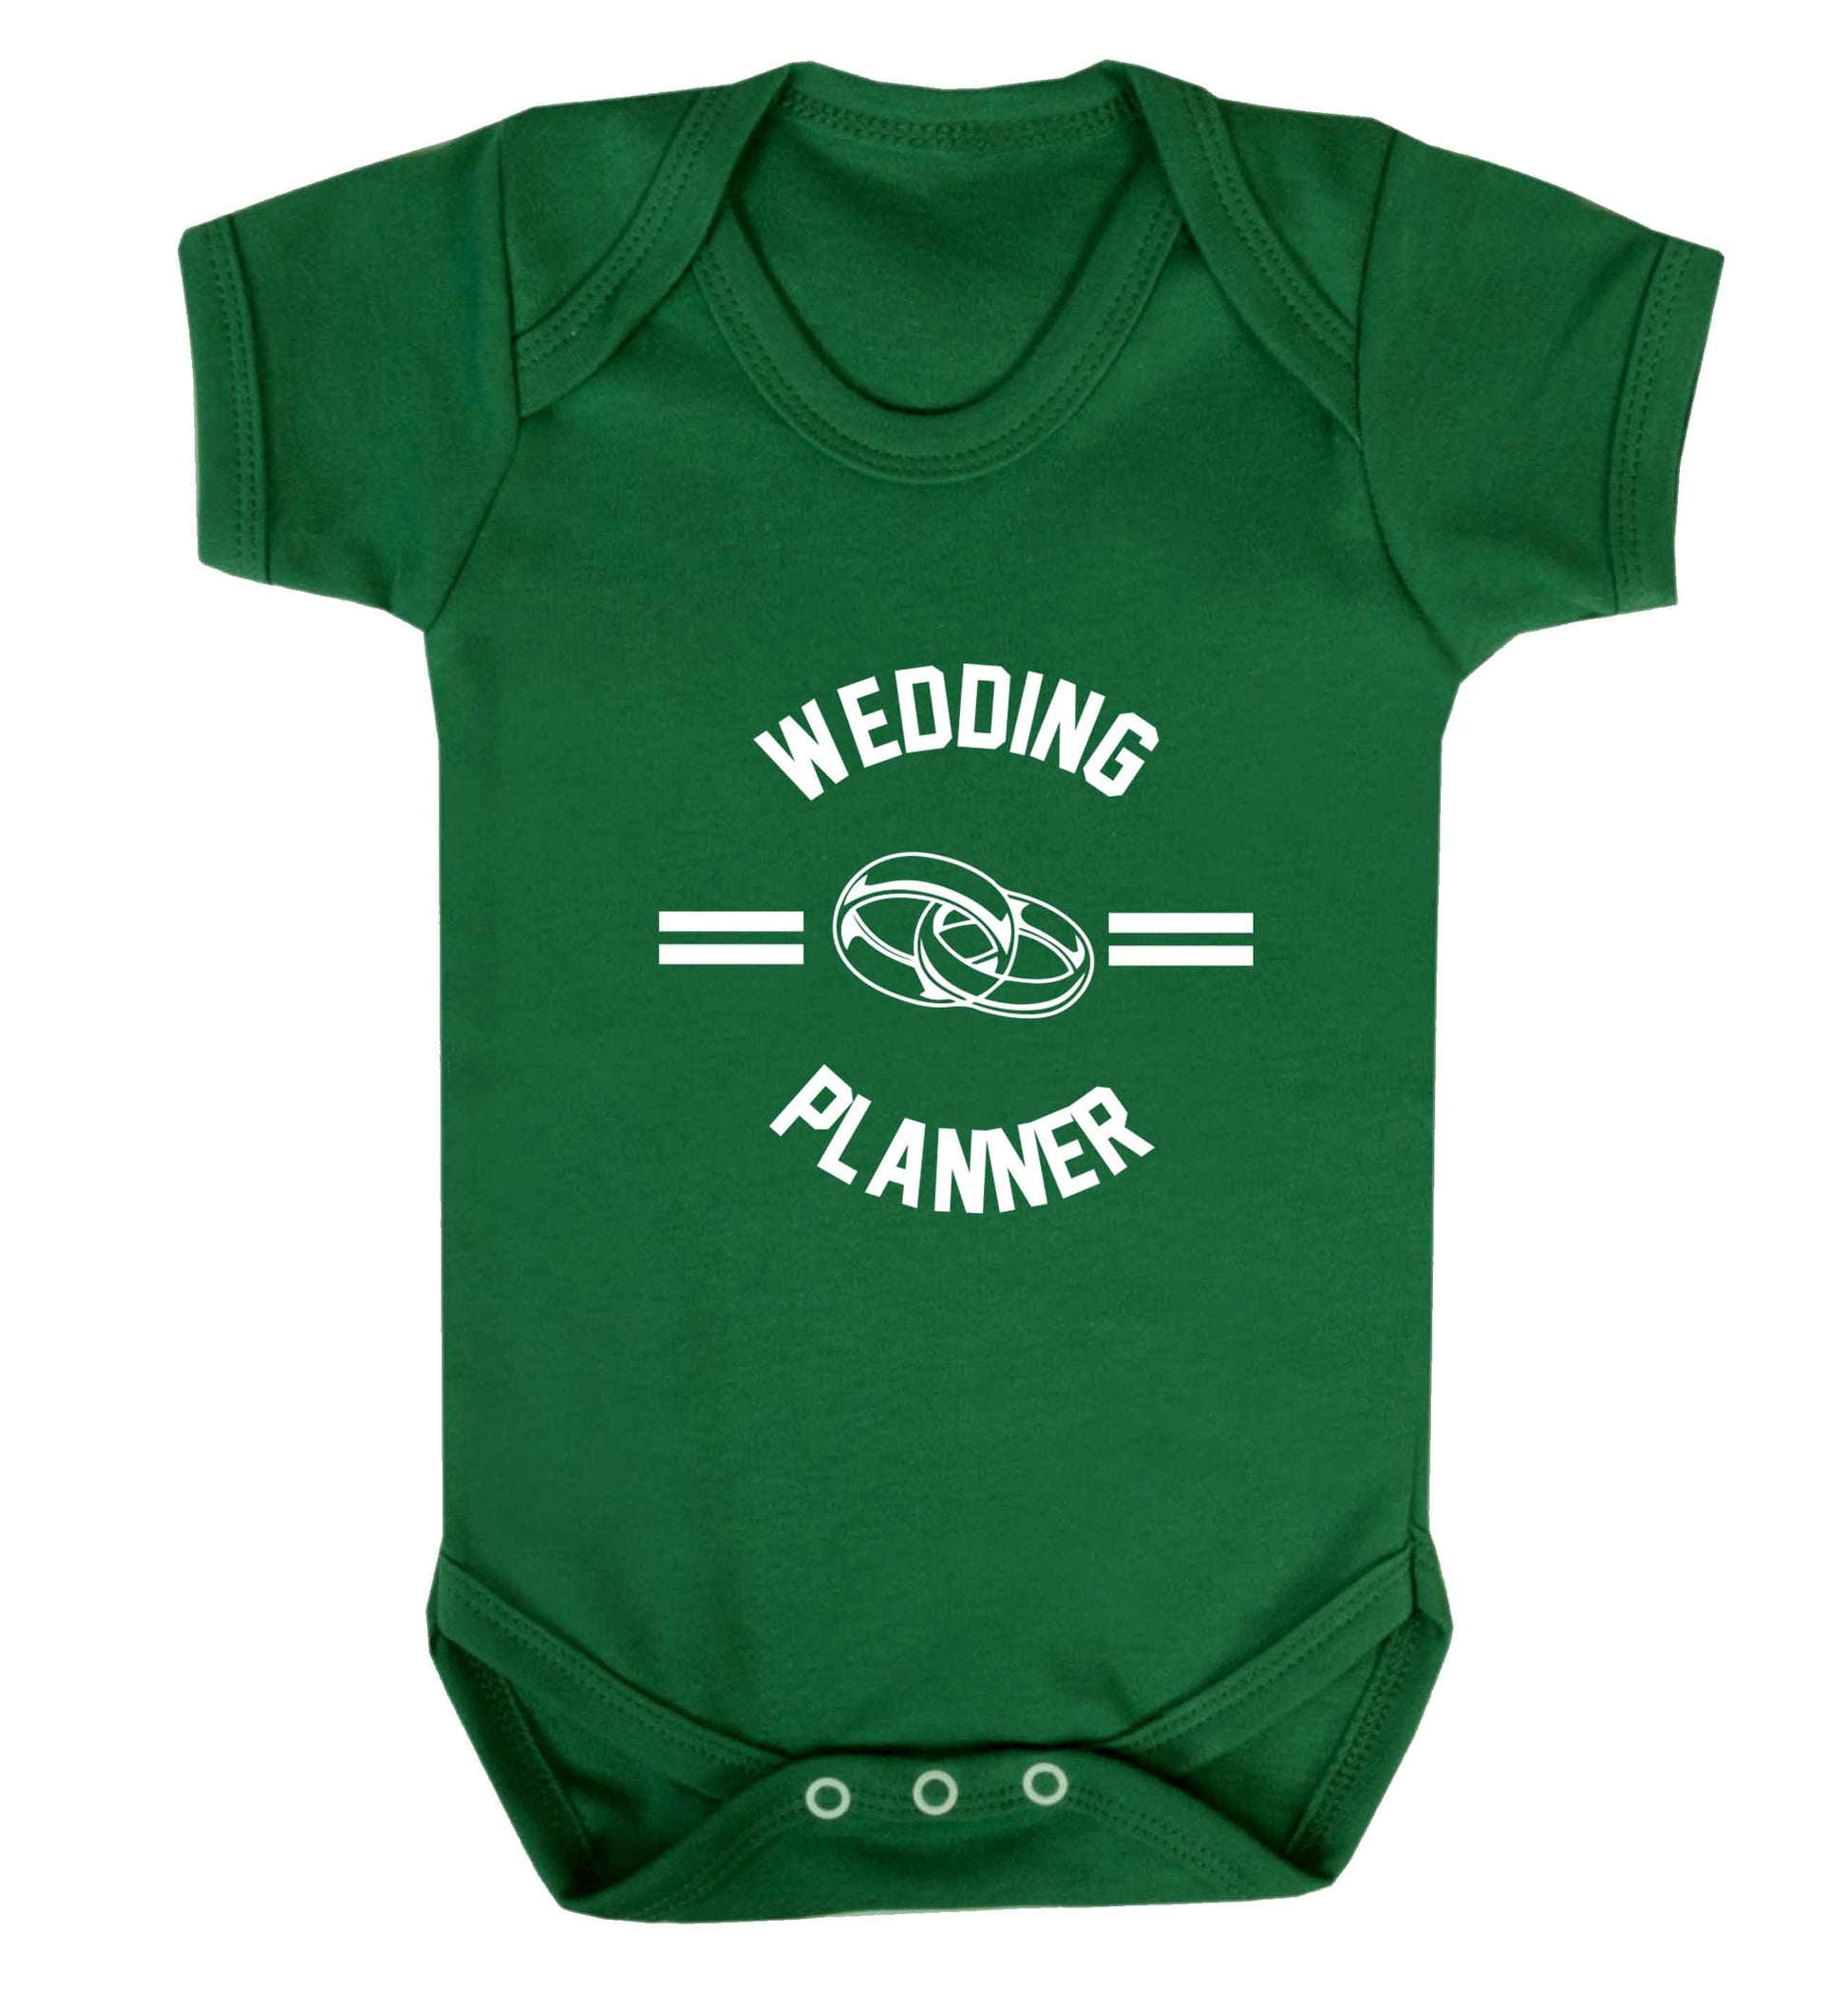 Wedding planner baby vest green 18-24 months